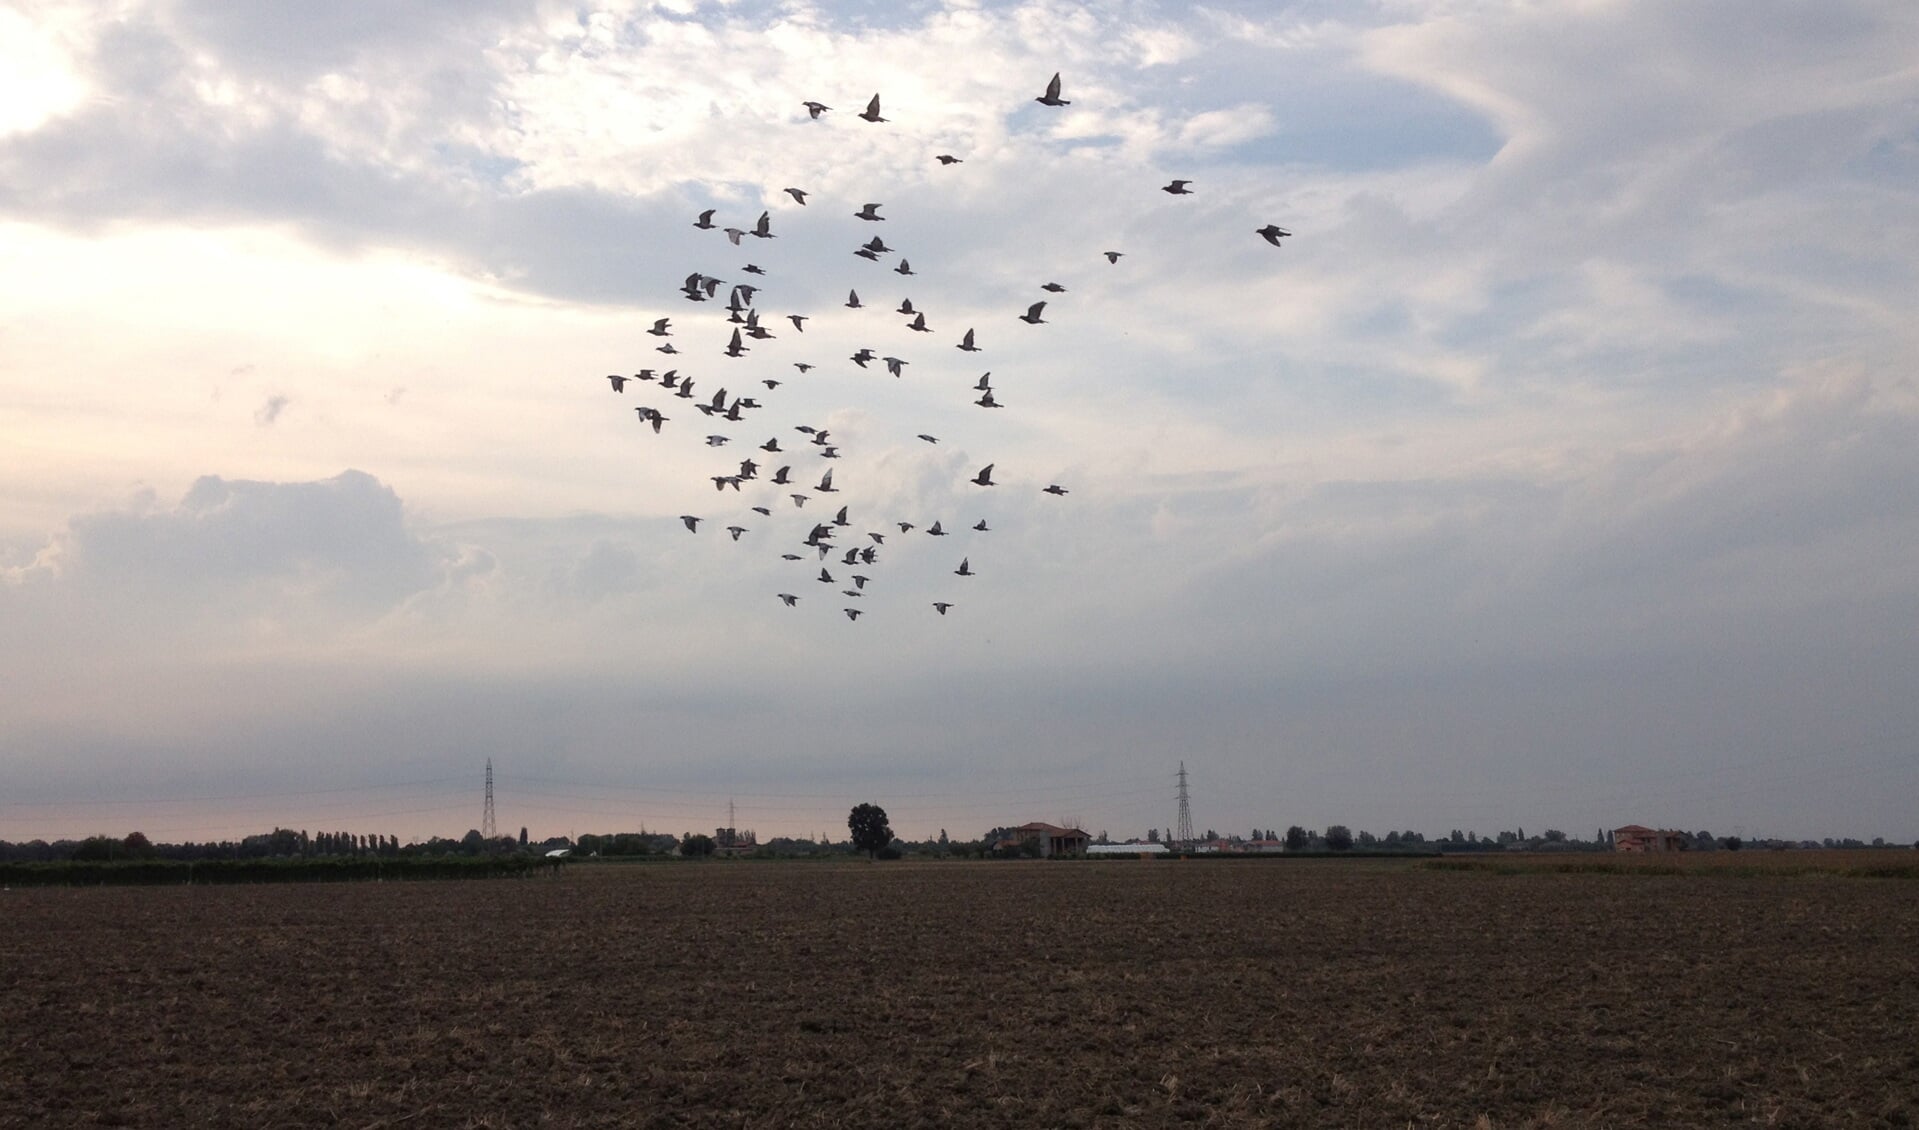 De duiven beginnen aan hun thuisreis. Foto: Robert Borneman